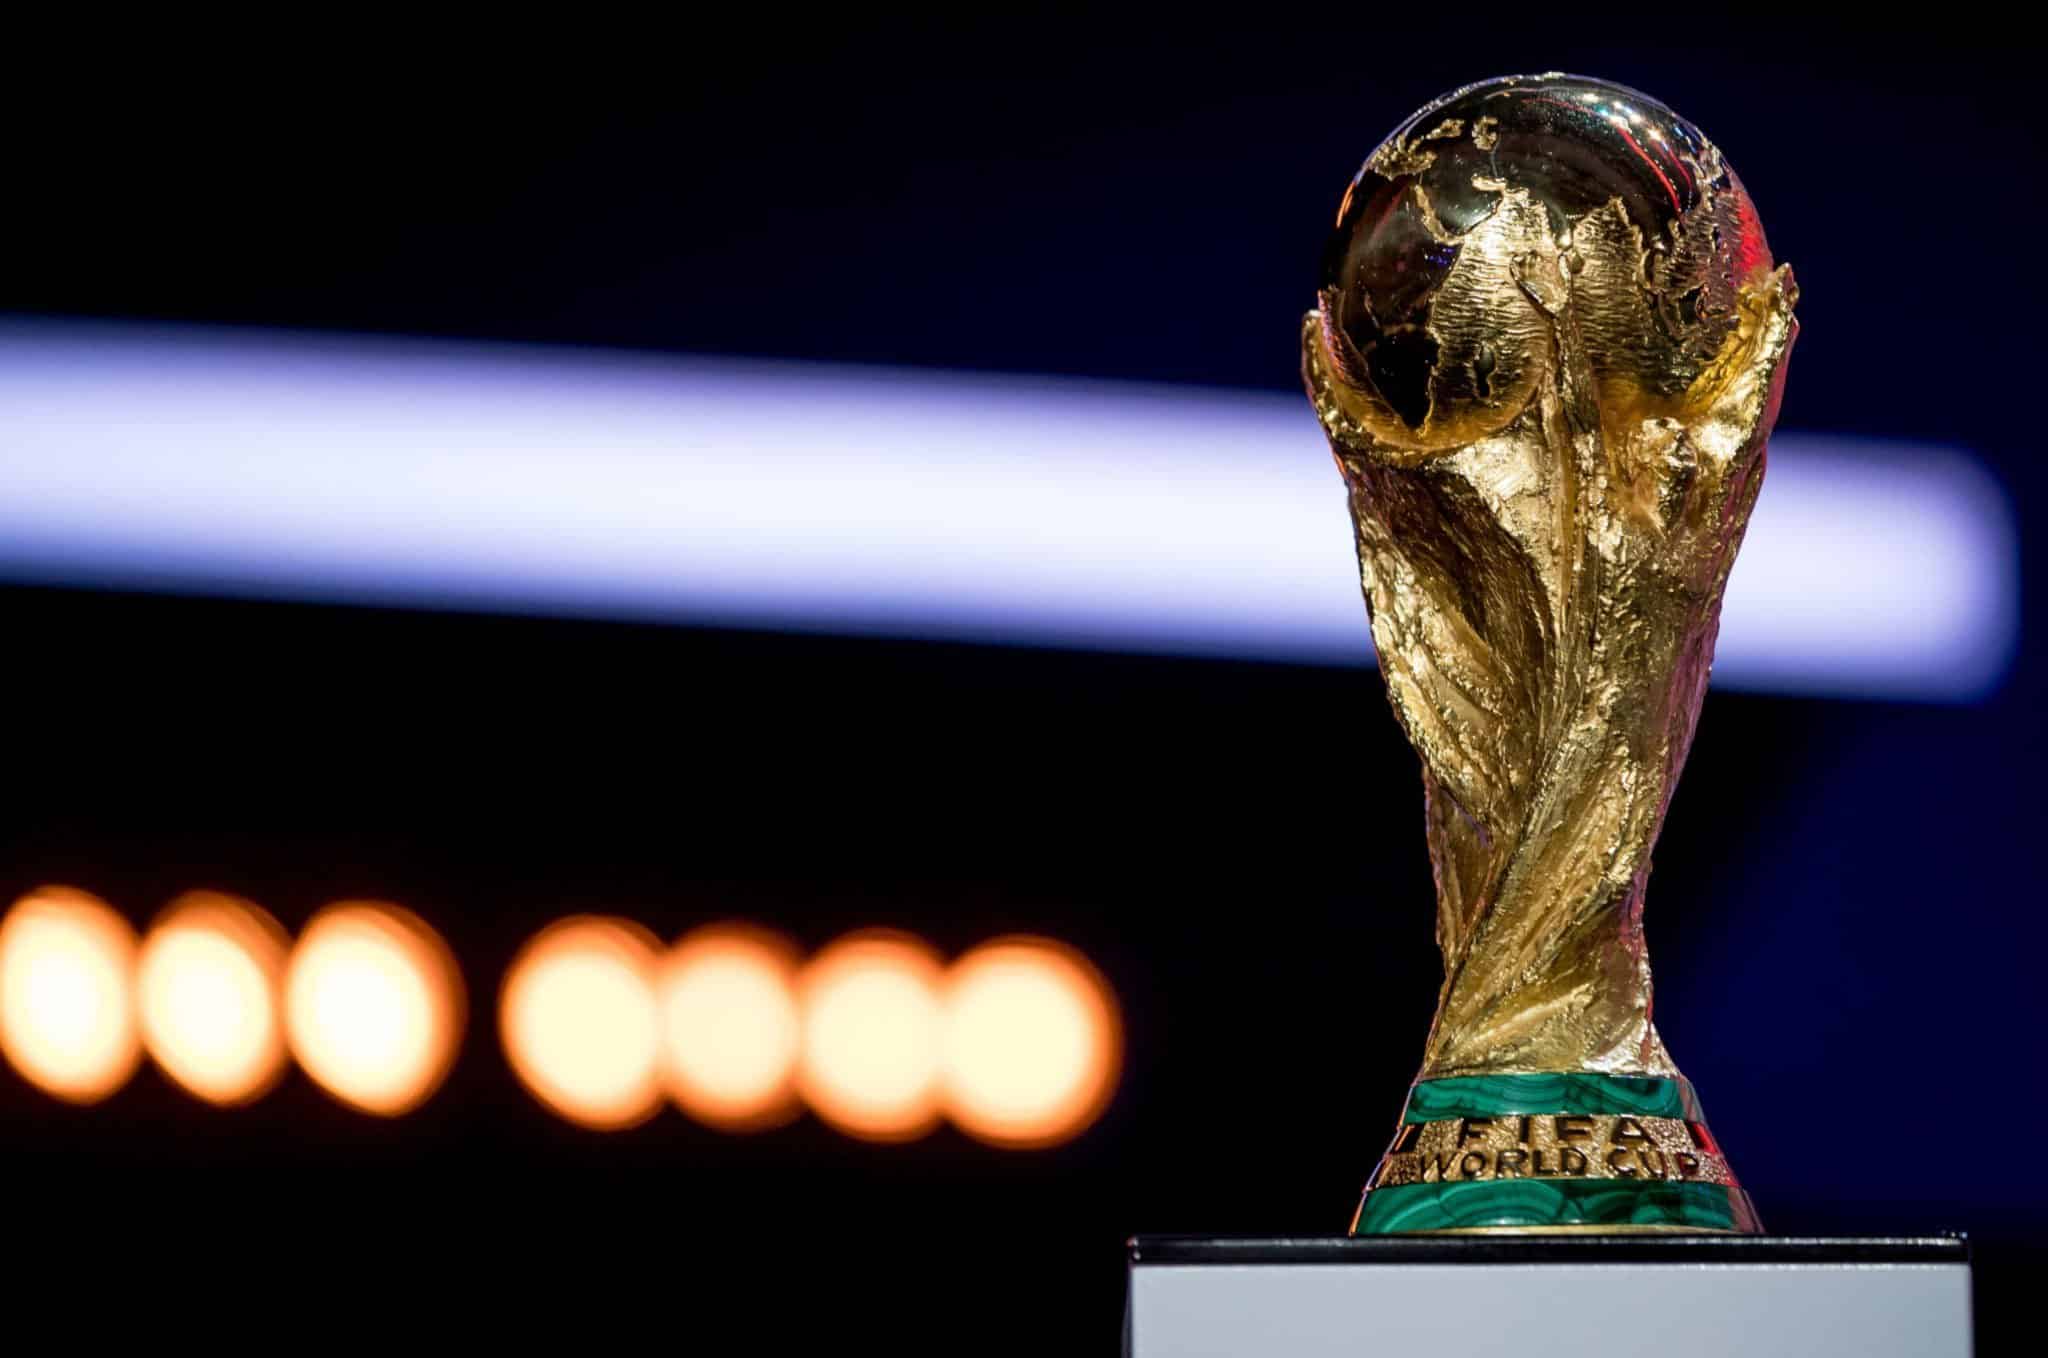 برنامج إحصائي يتوقع هوية بطل كأس العالم 2022 watanserb.com